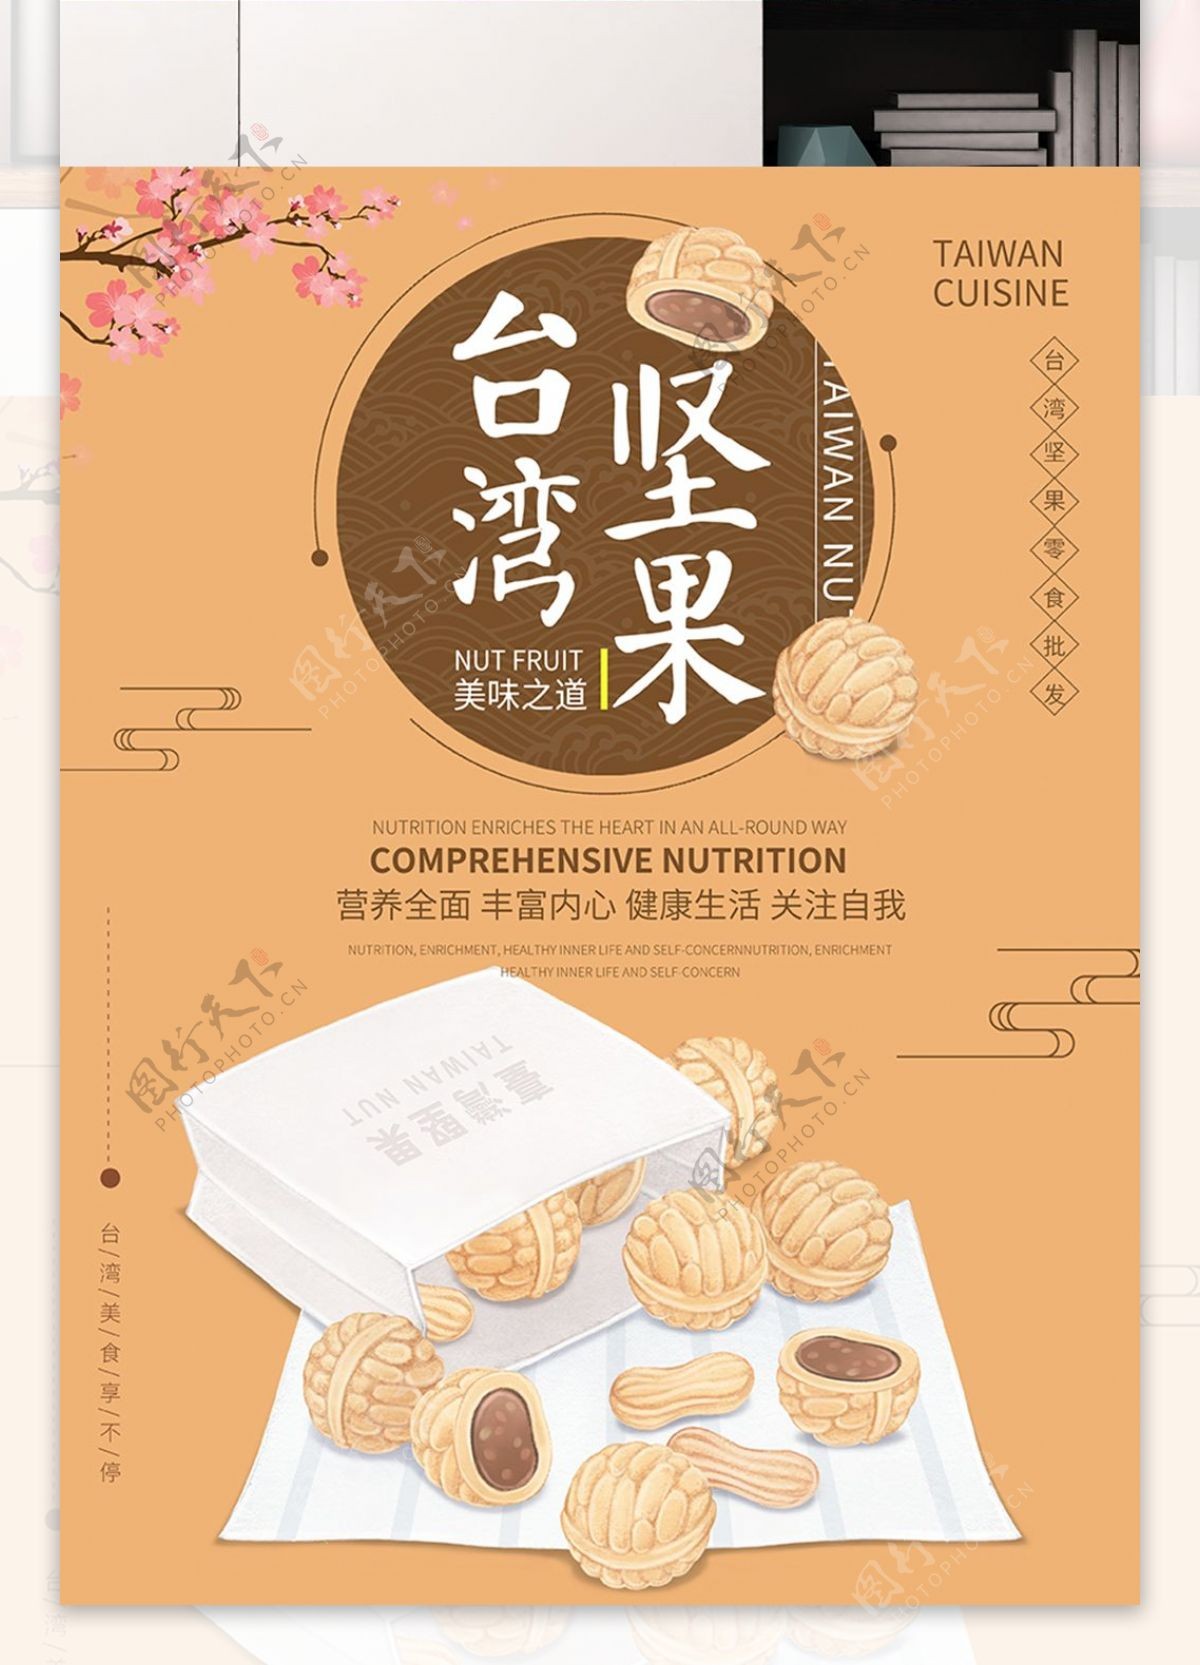 原创插画手绘台湾美食坚果海报